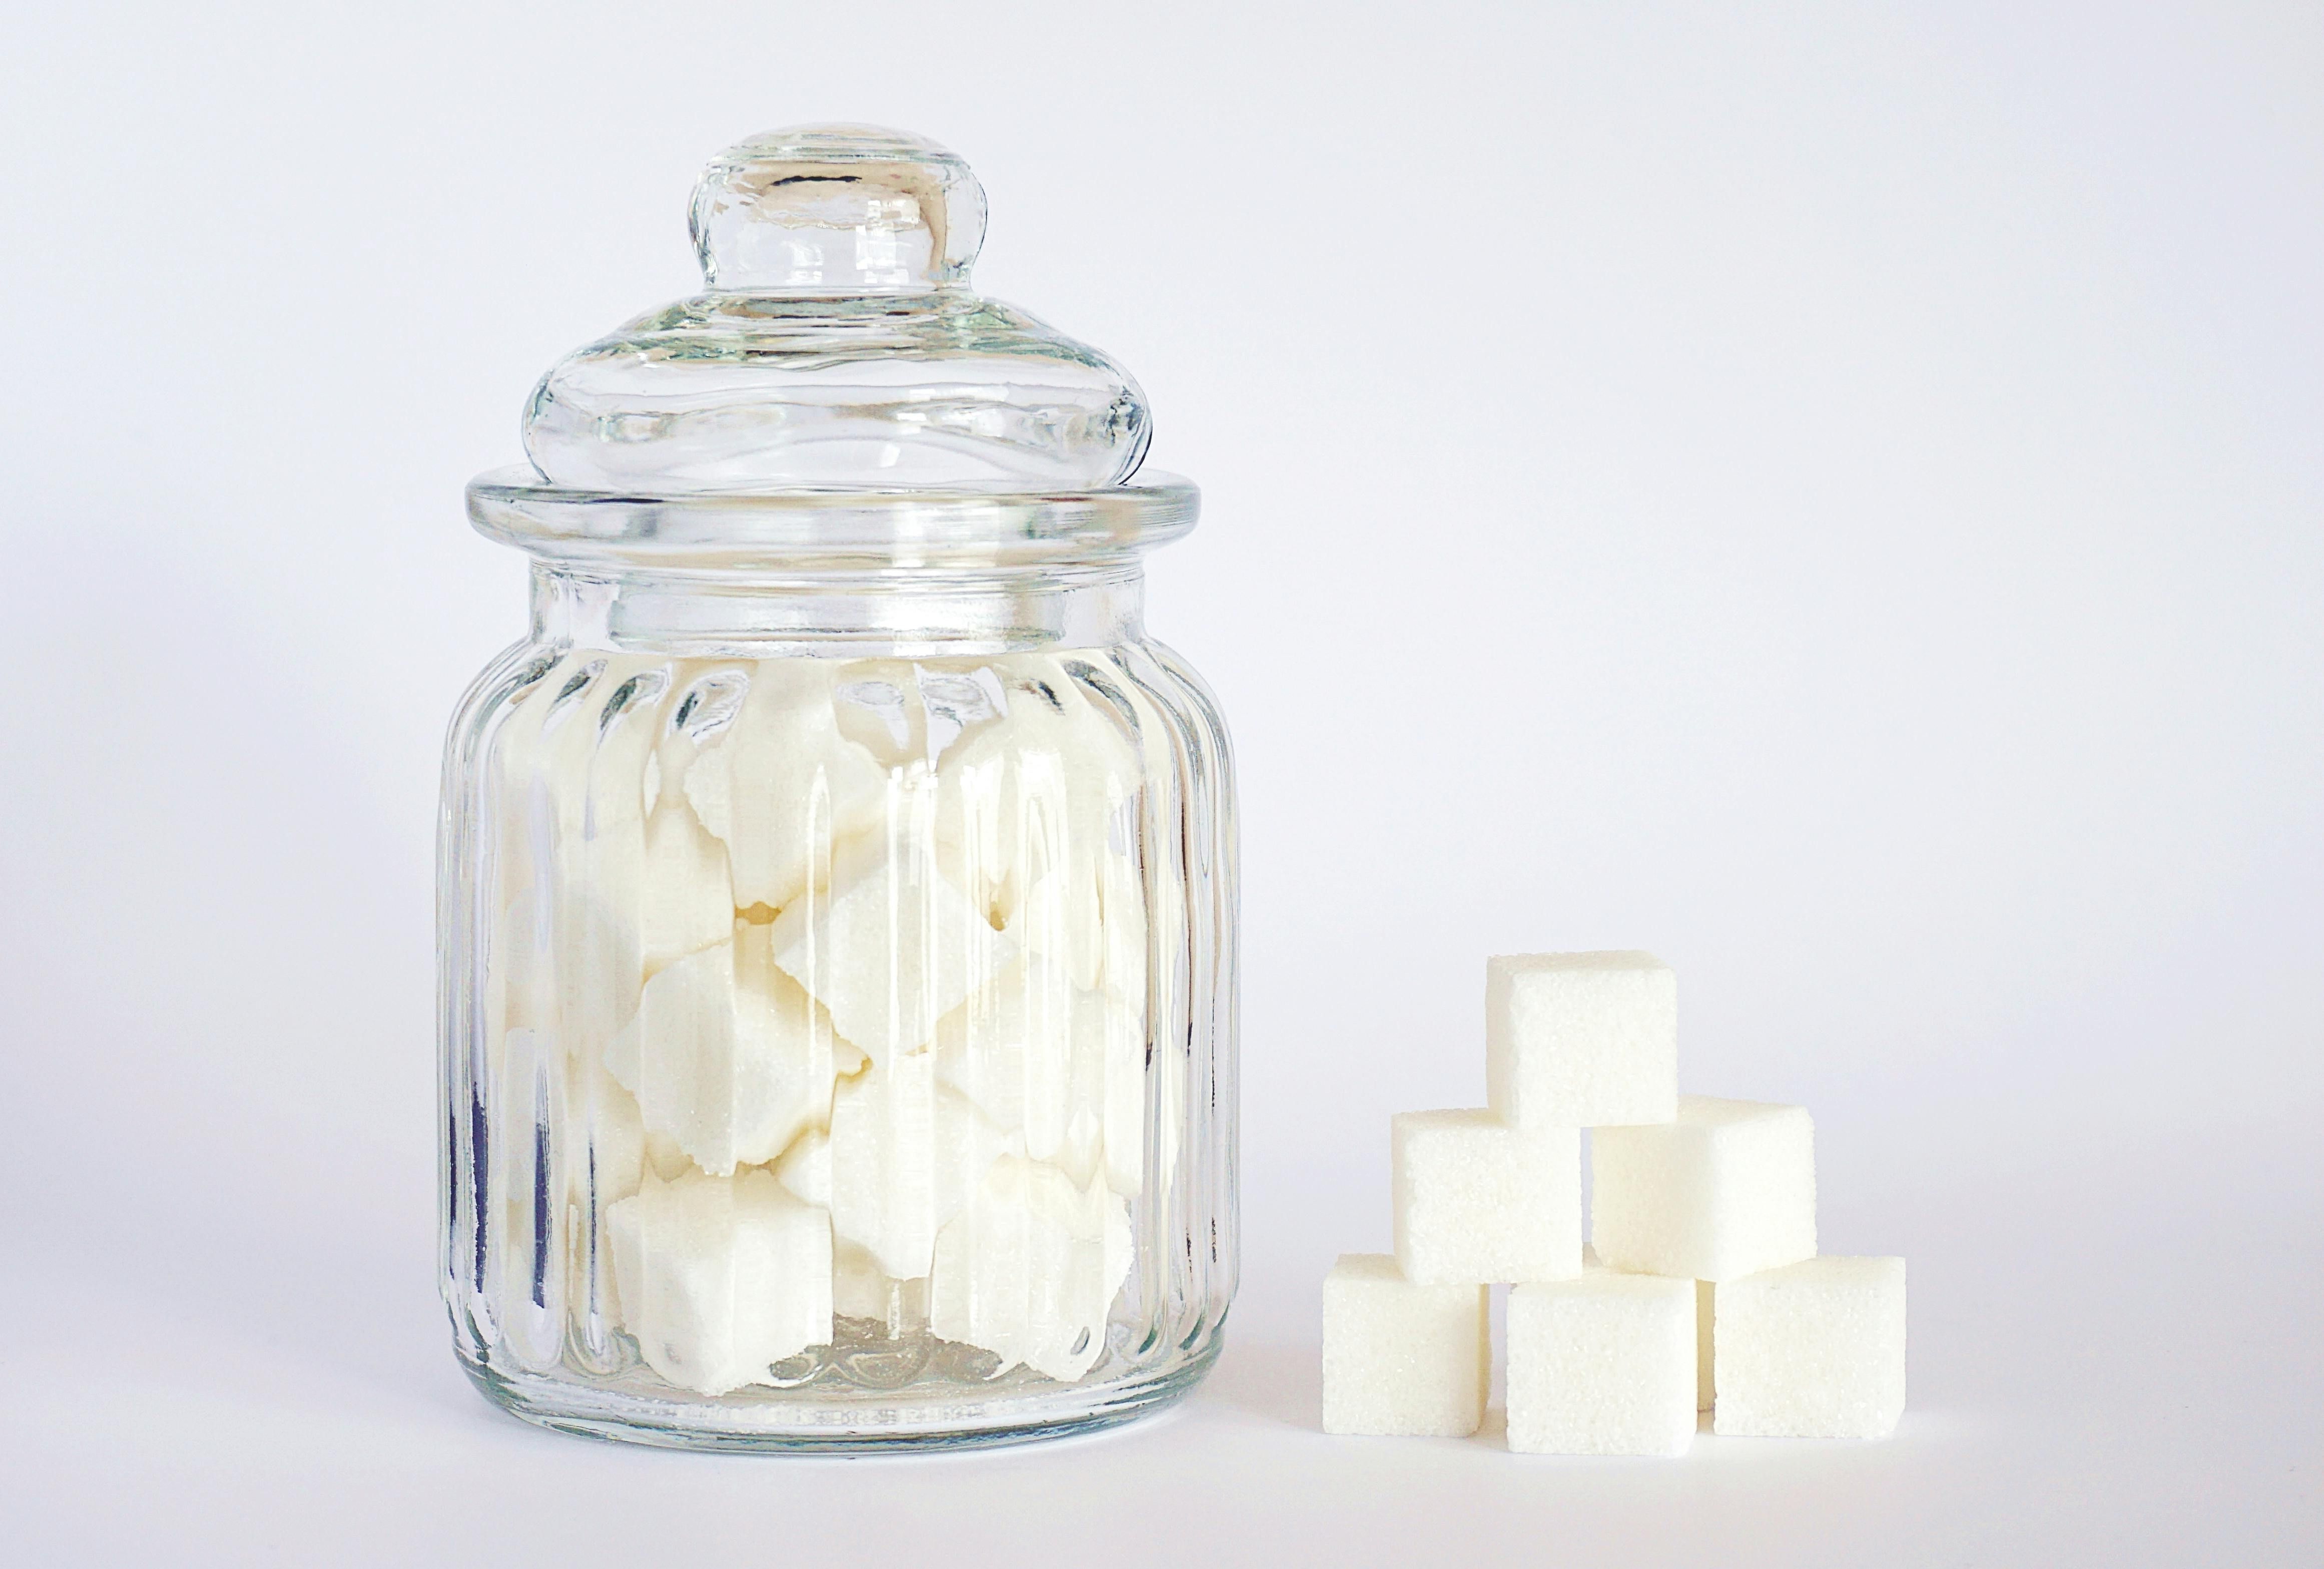 Чому експорт цукру з Україна припинився - скільки цукру продається щороку